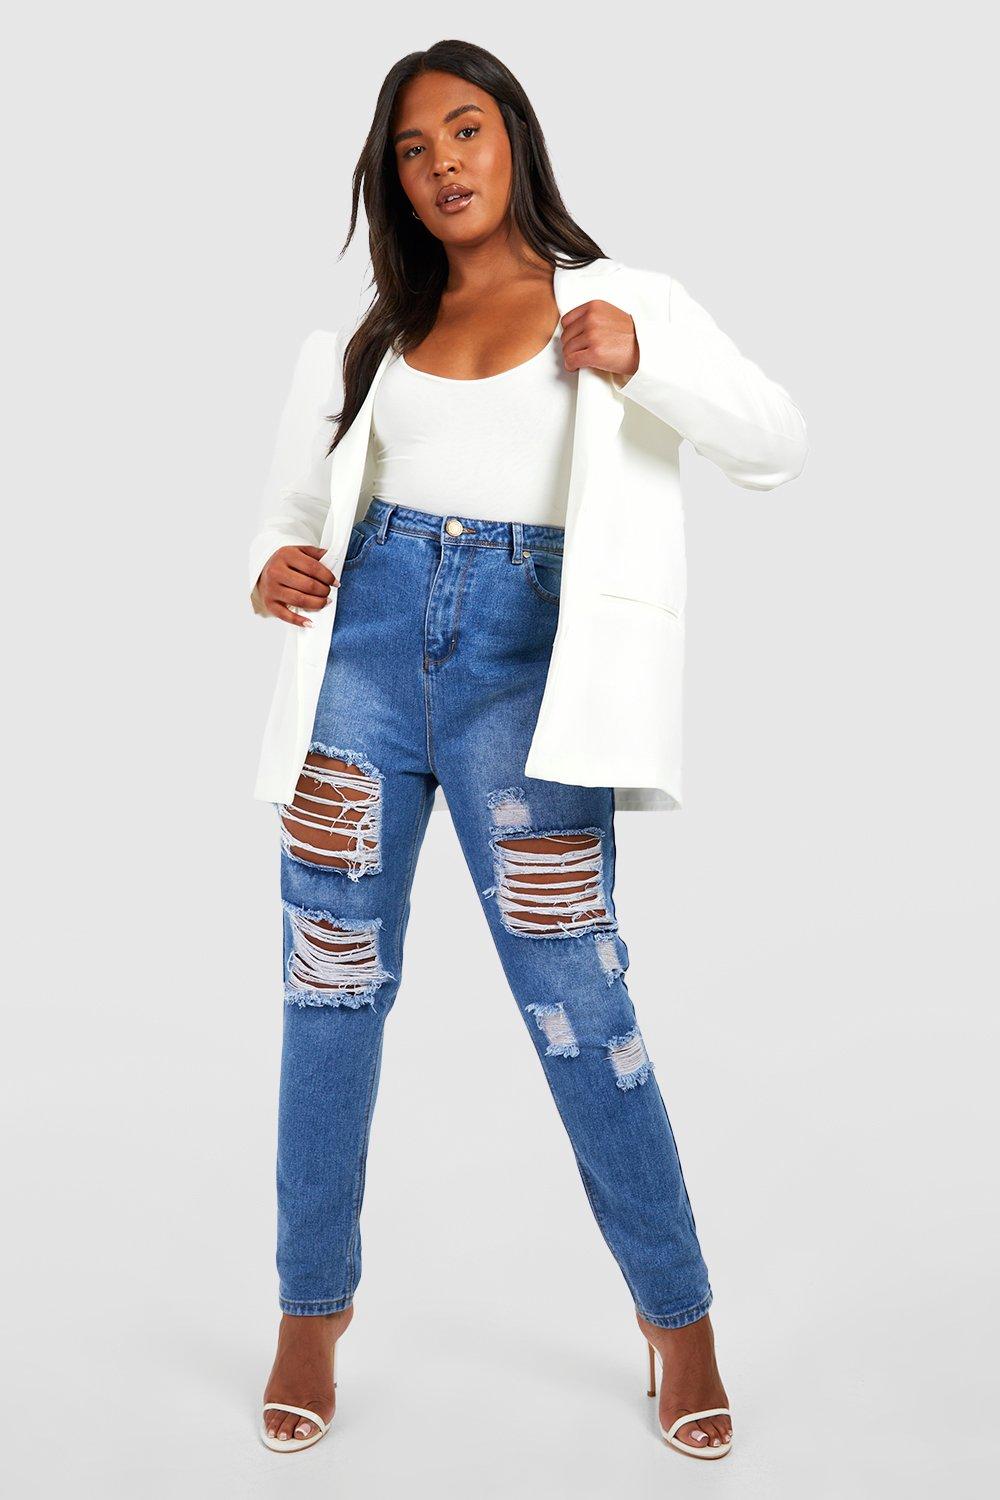 trendy jean jackets